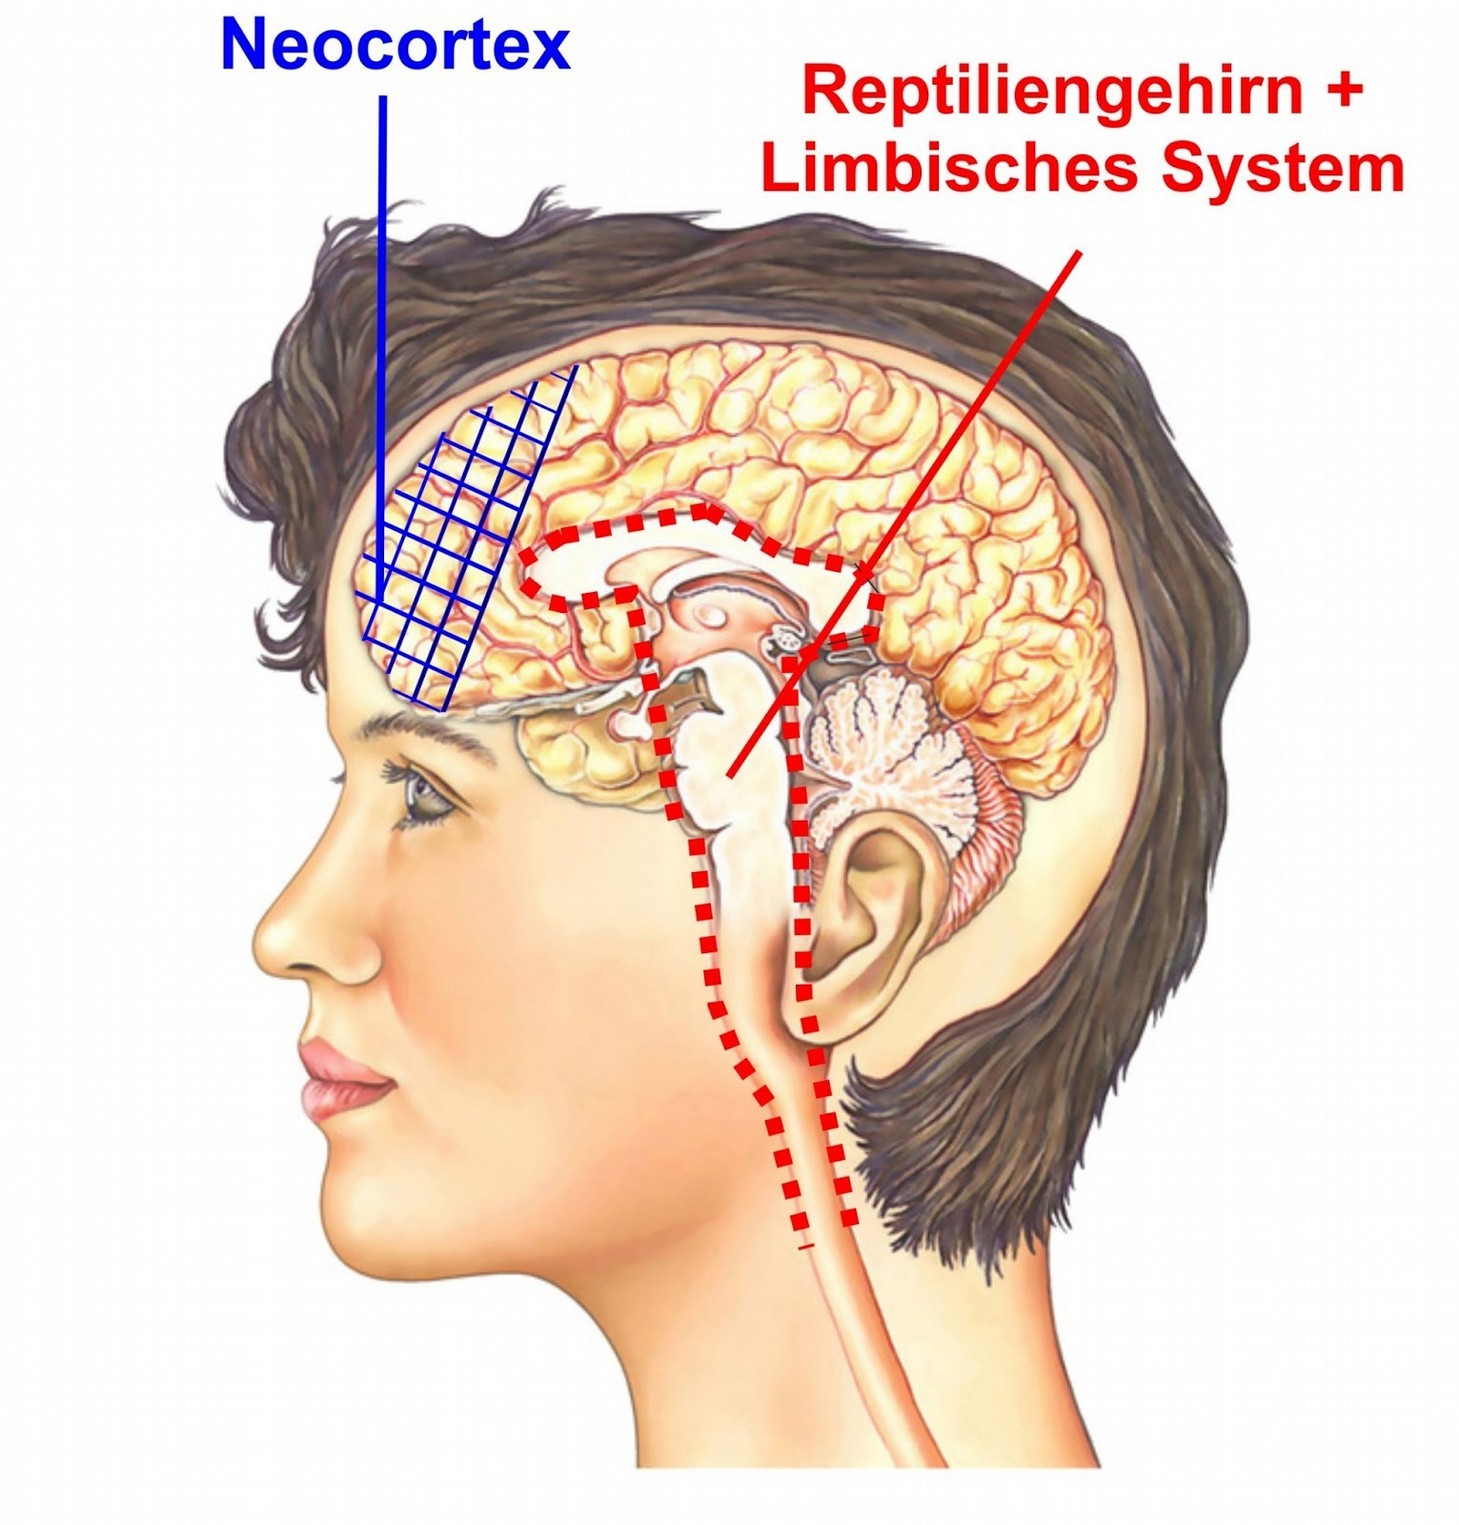 Limbisches System und Reptiliengehirn: Gefühle, teilen wir mit Reptilien Neocortex,